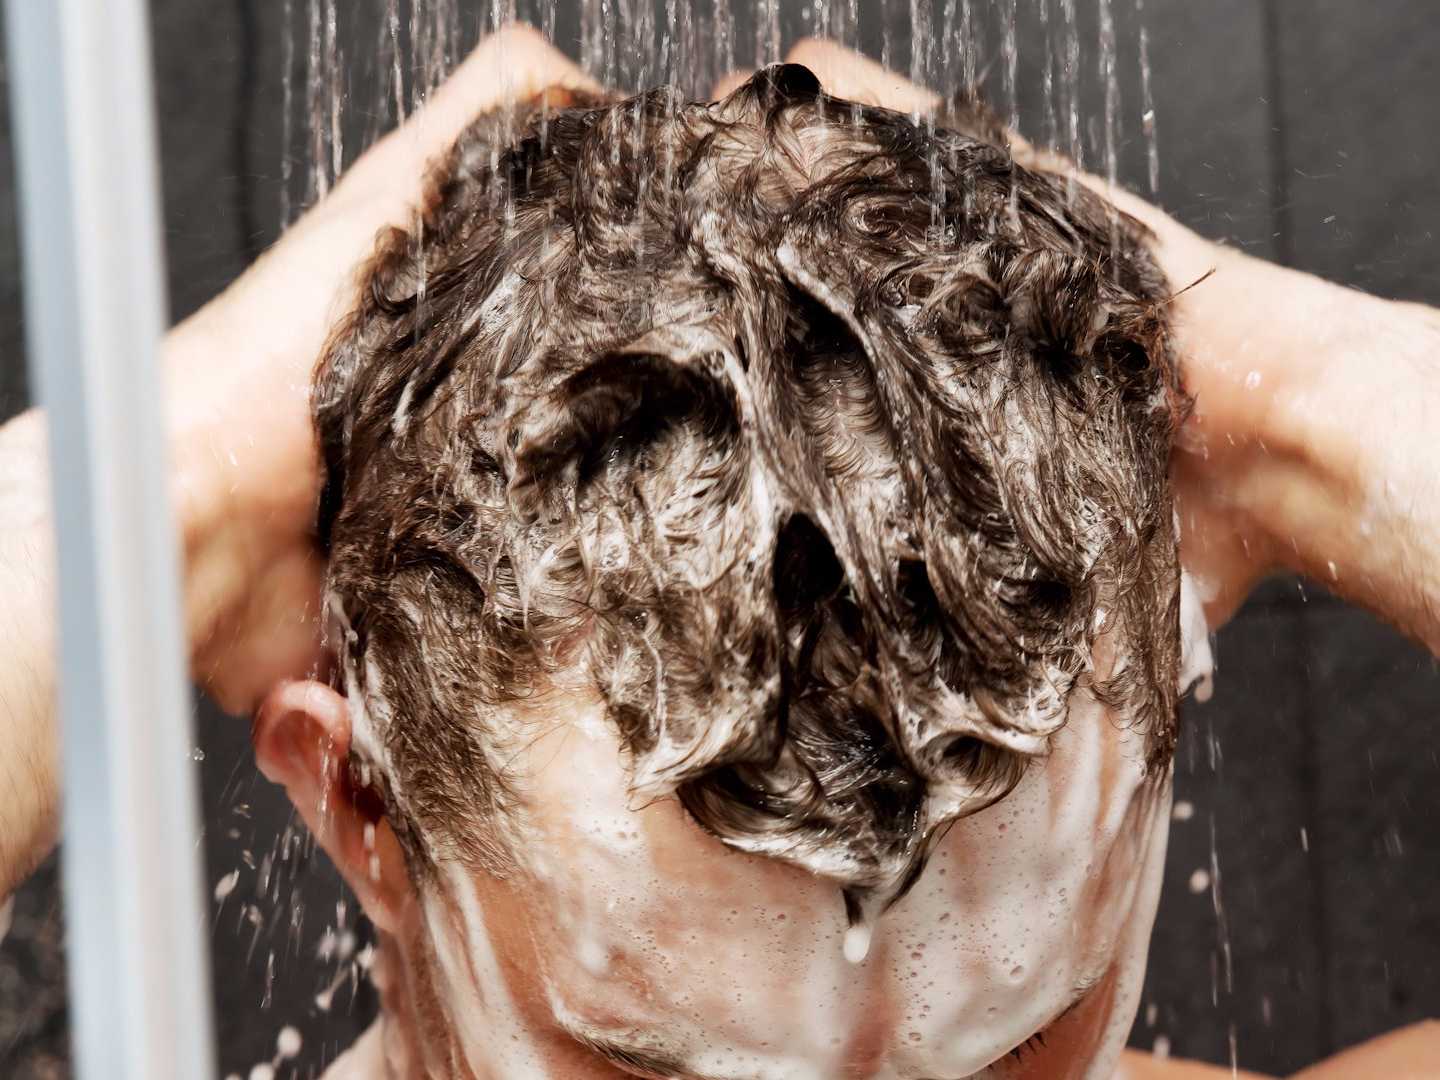 Стрижка мытье головы. Мытье головы. Мытье головы мужчине. Мытье волос мужчина. Мужчина моет голову.